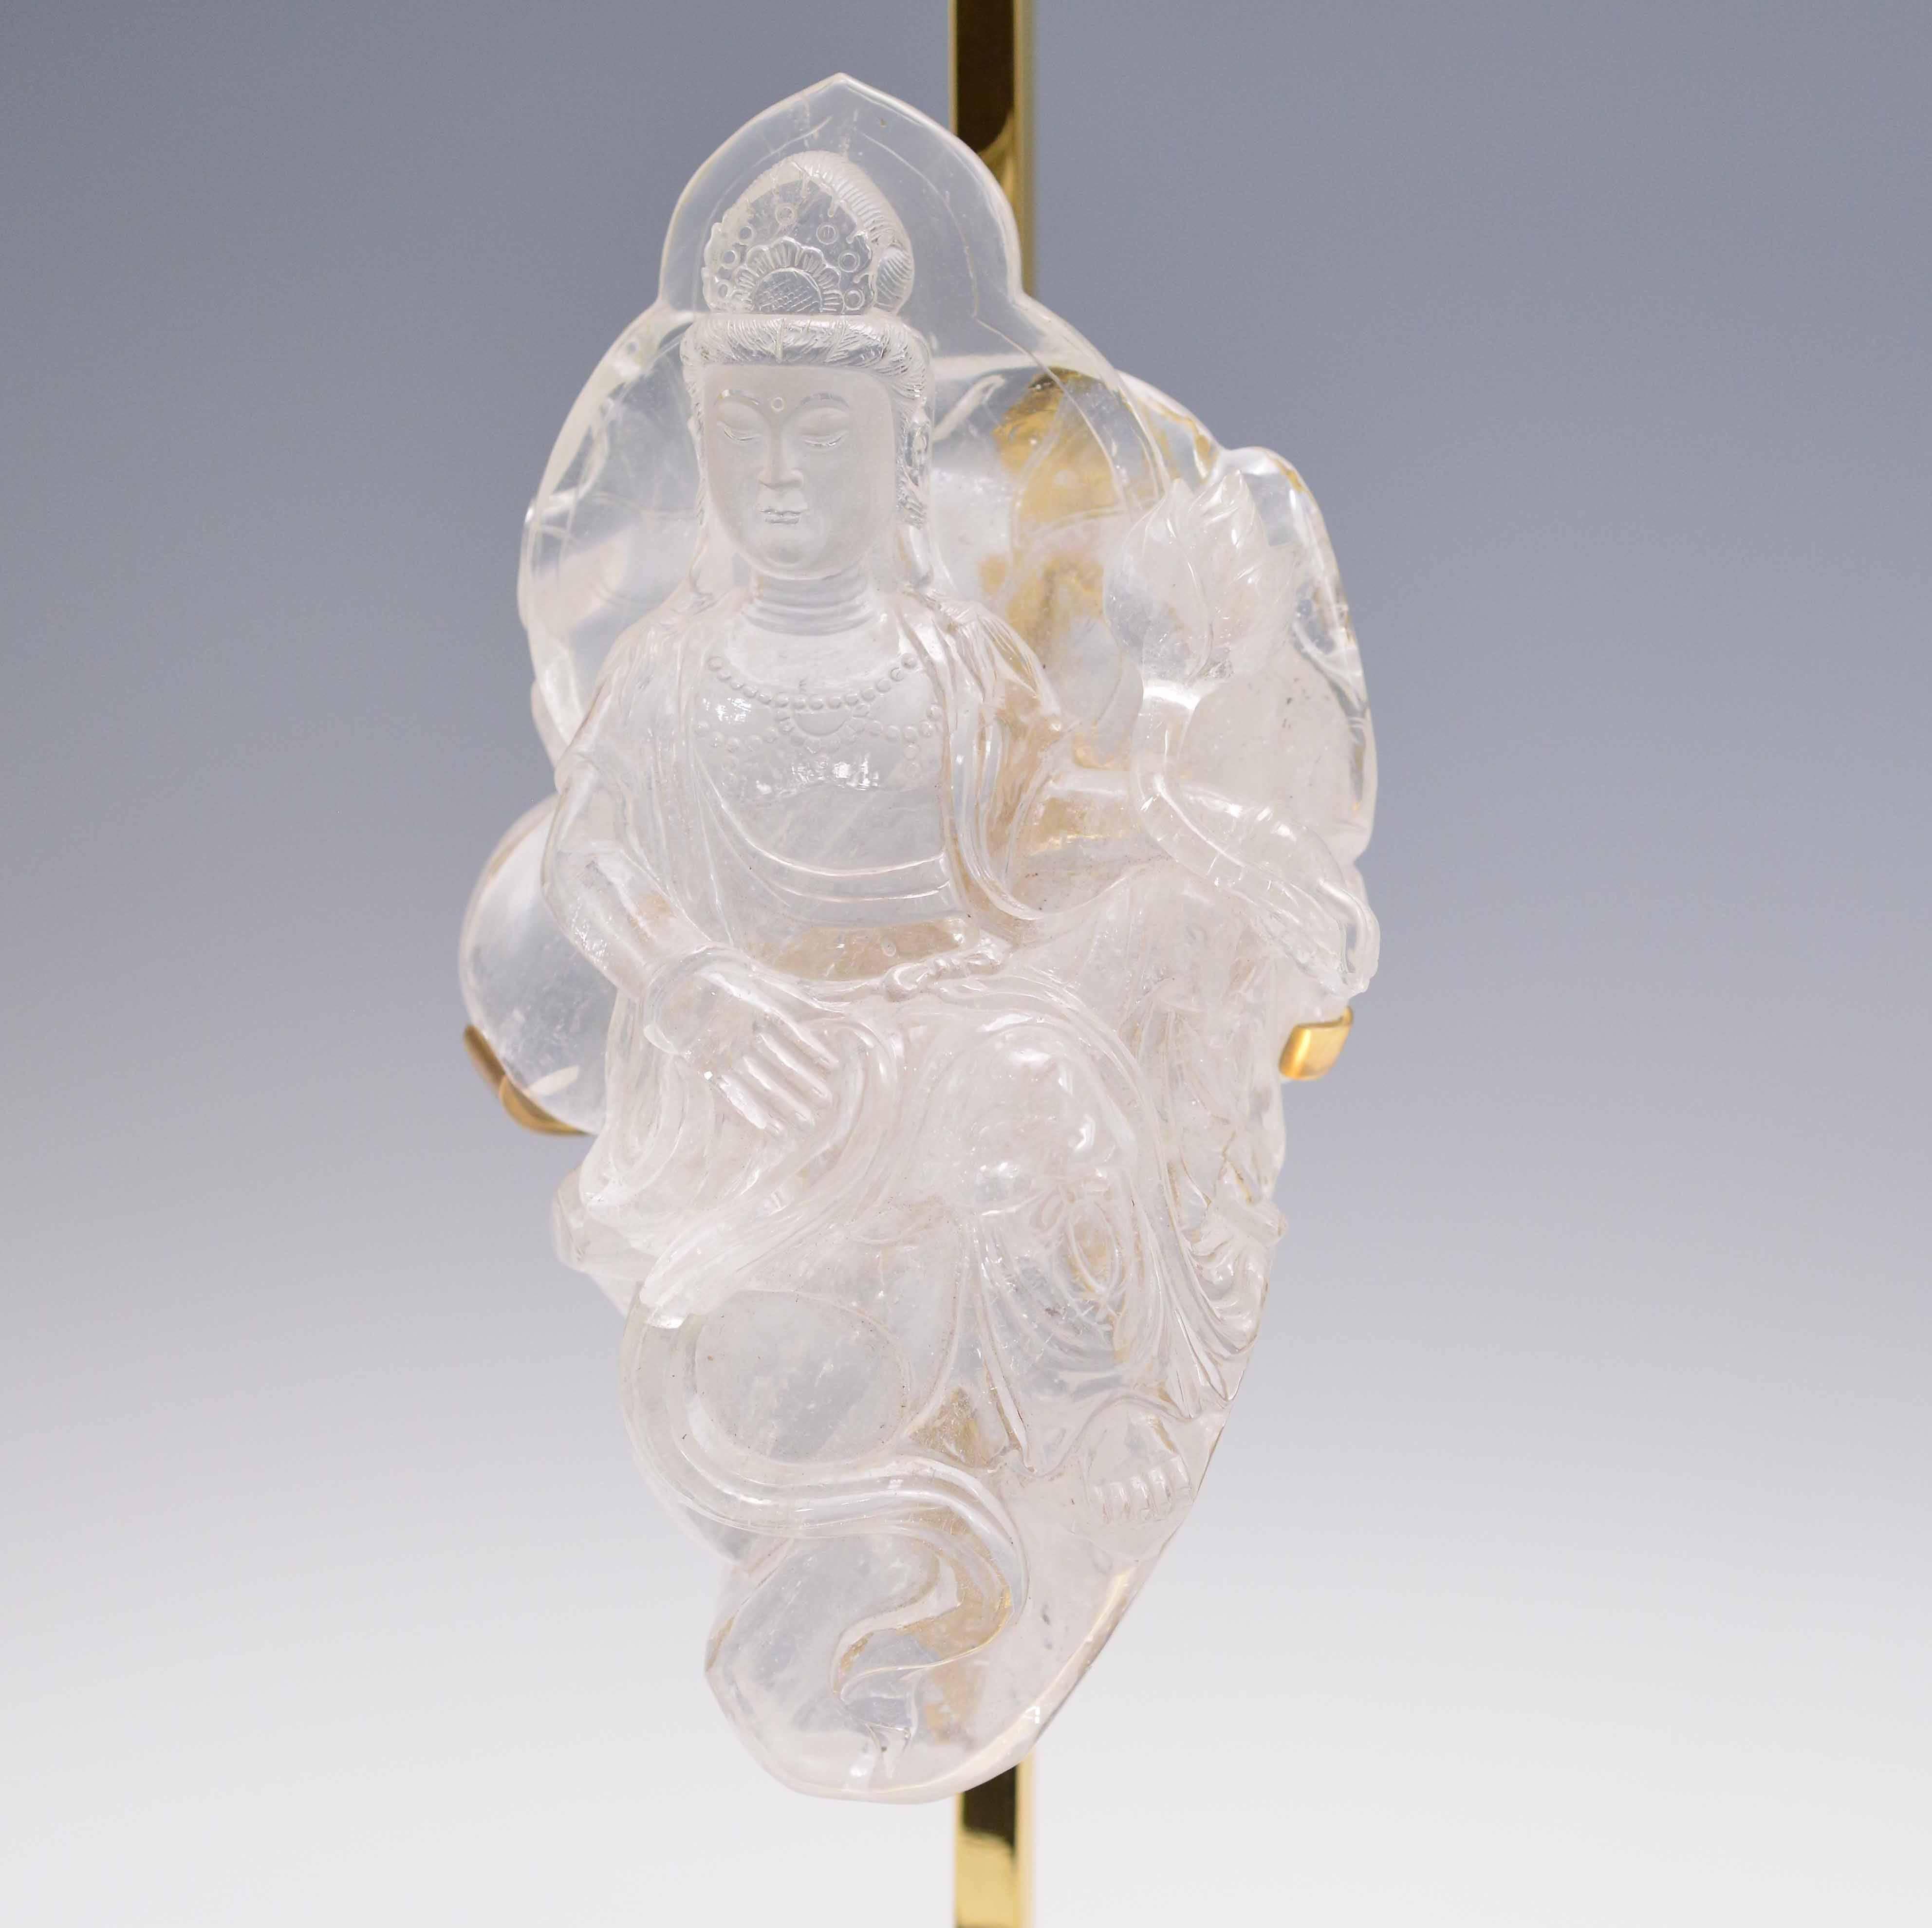 Un quartz de cristal de roche finement sculpté représentant Bodhisattva avec une fleur de lotus dans des bases en laiton poli faites sur mesure, créé par Phoenix Gallery, NYC.
Disponible en finition nickel et laiton antique. 
Jusqu'au cristal de